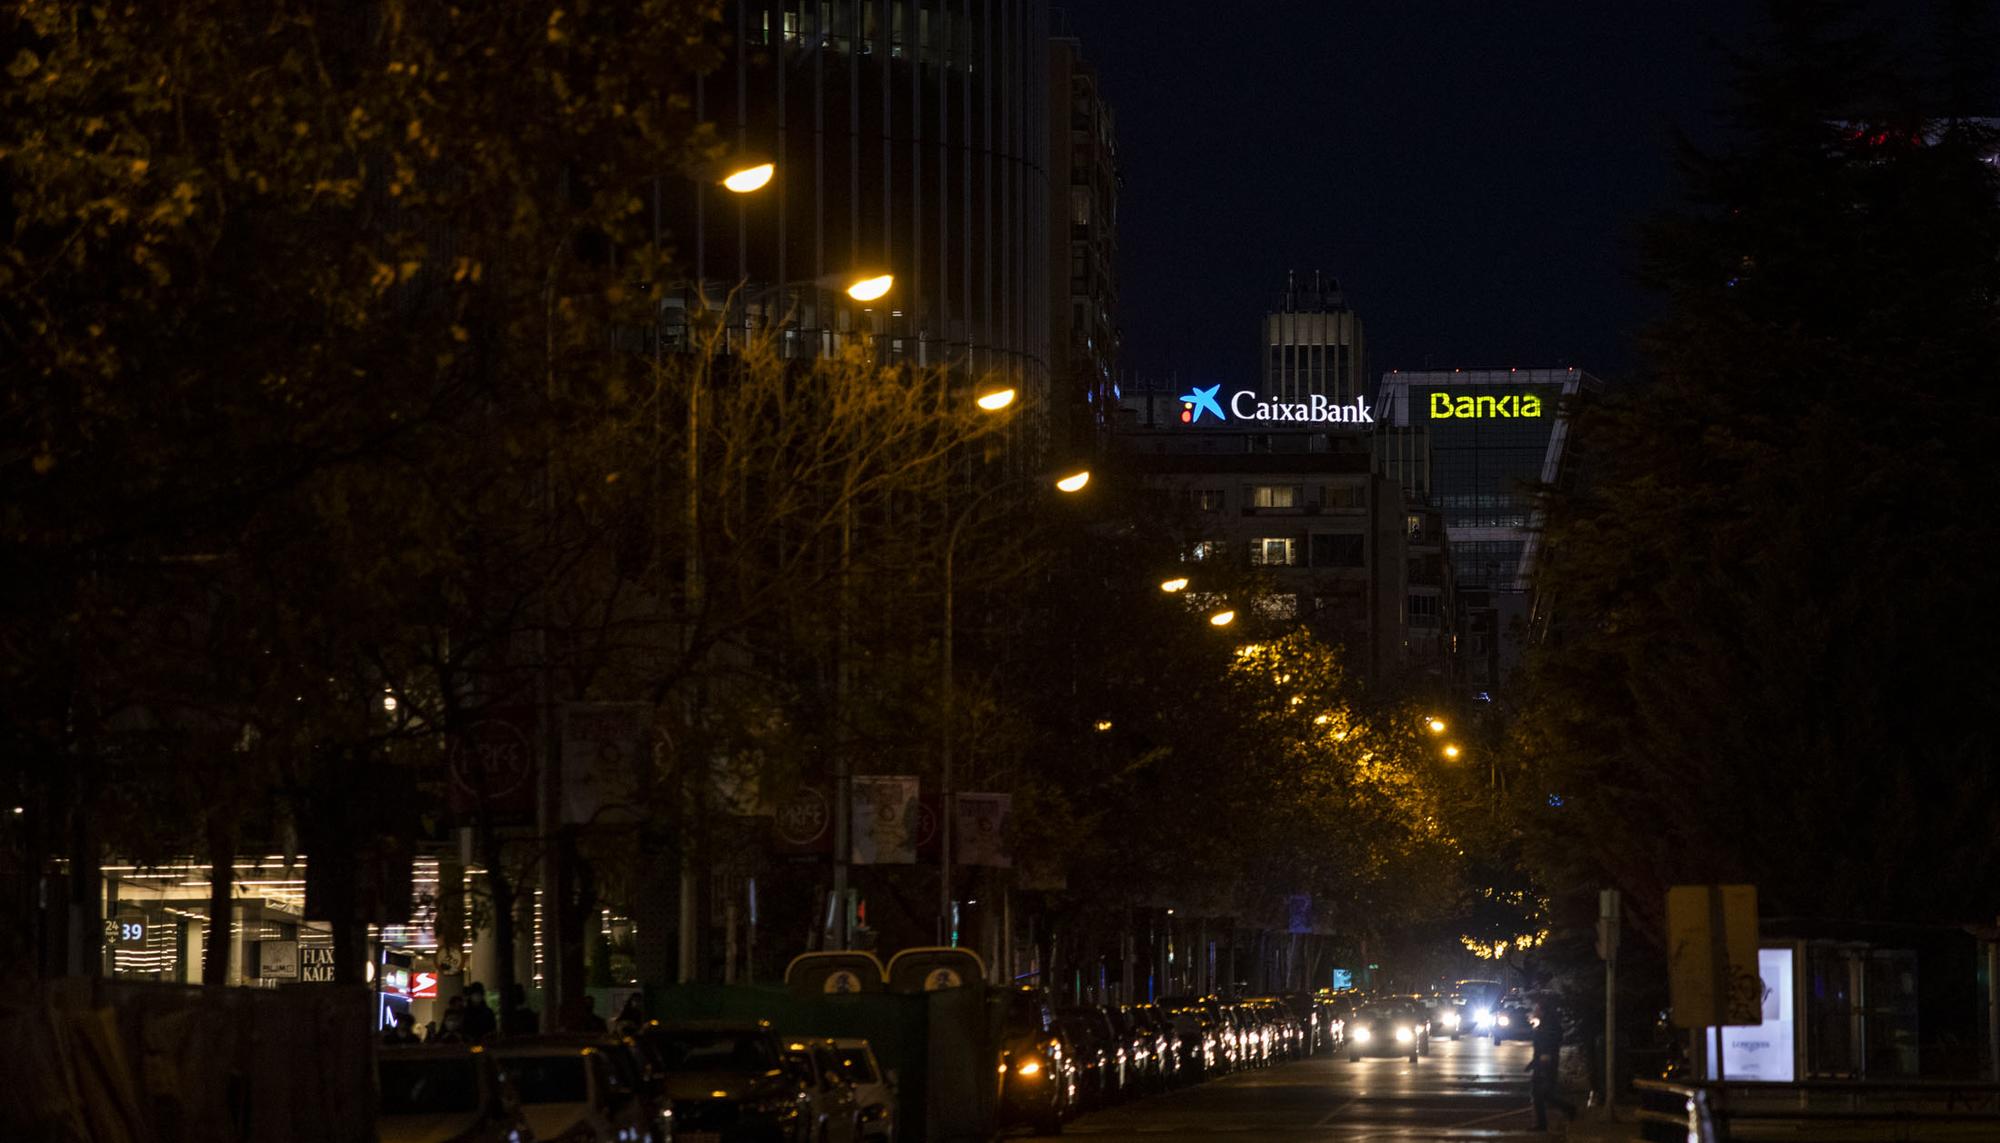 Bankia Caixa